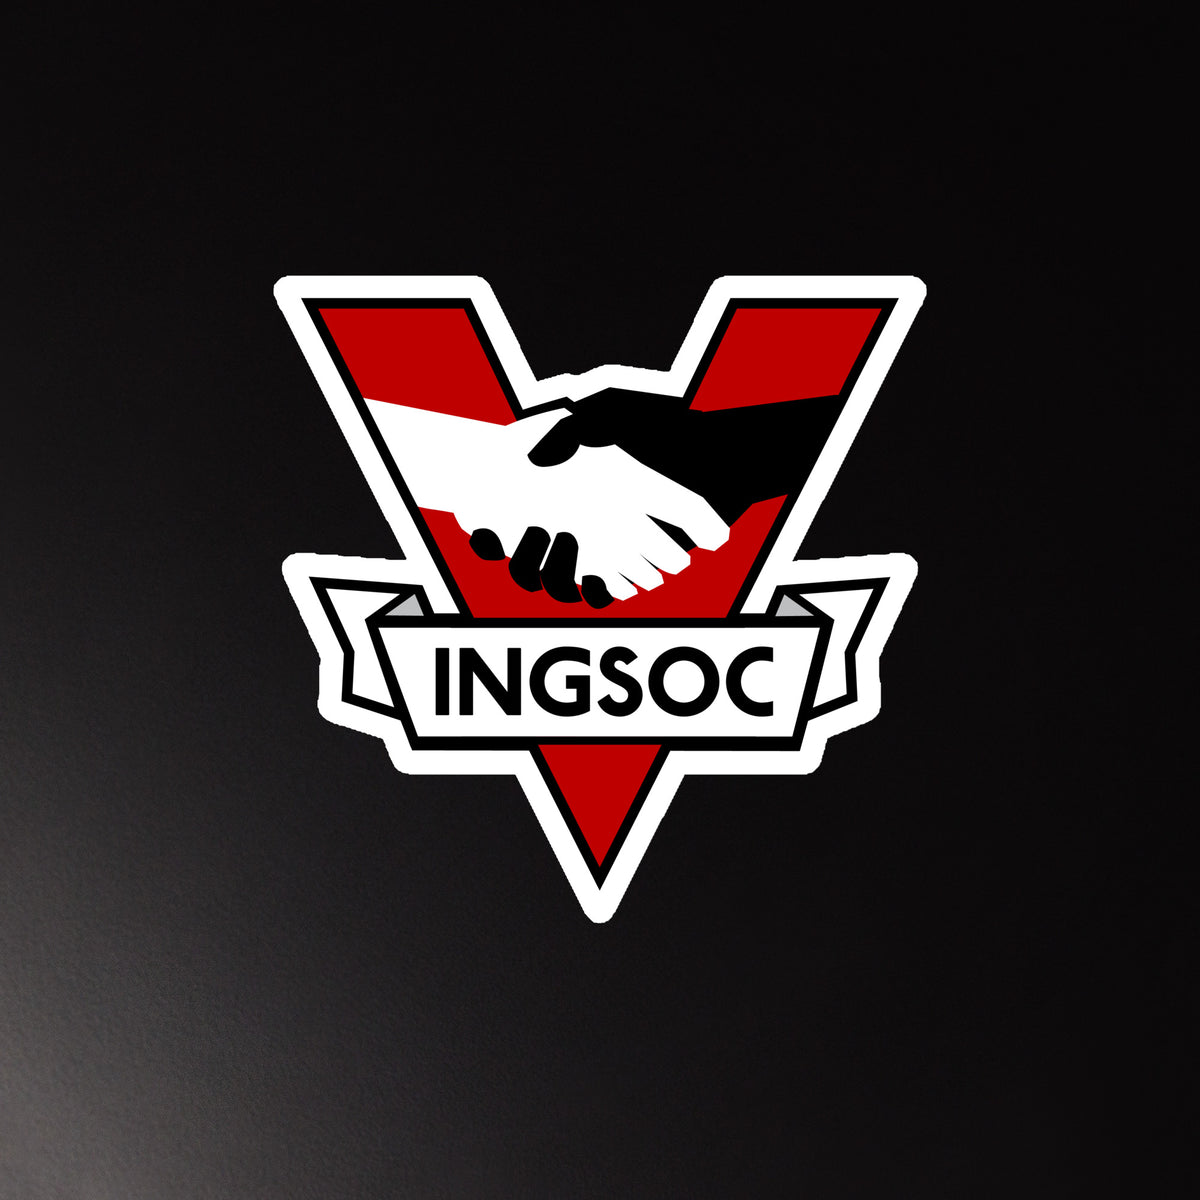 INGSOC 1984 Insignia Die-Cut Magnet